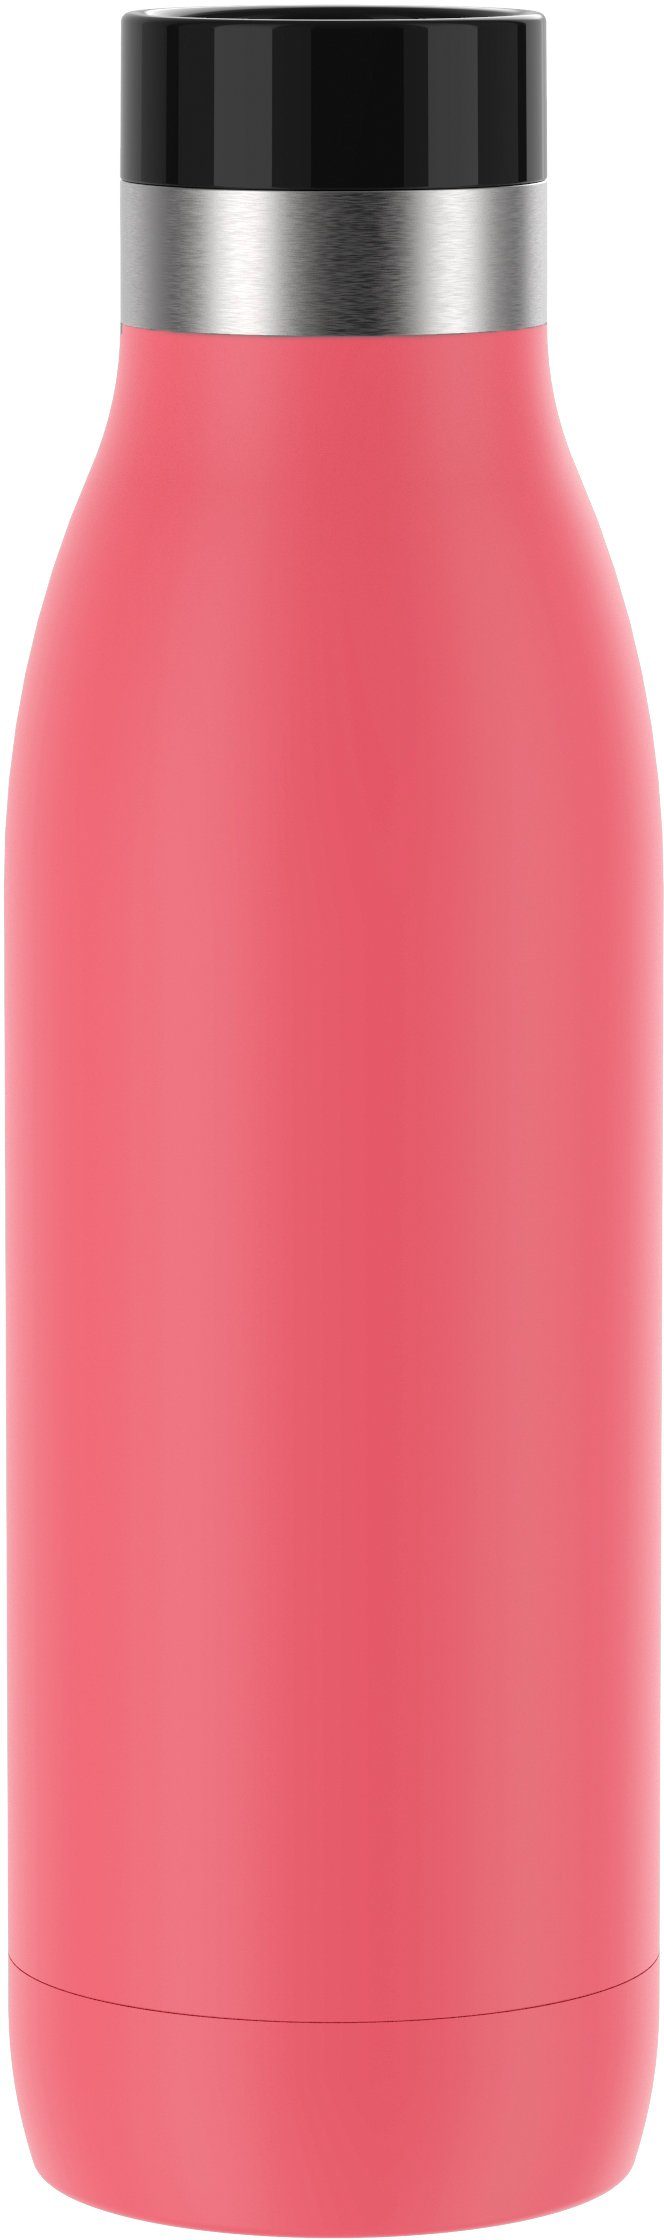 Chilly's Trinkflasche Matte (750 ml) (Farbe: pink) - online kaufen